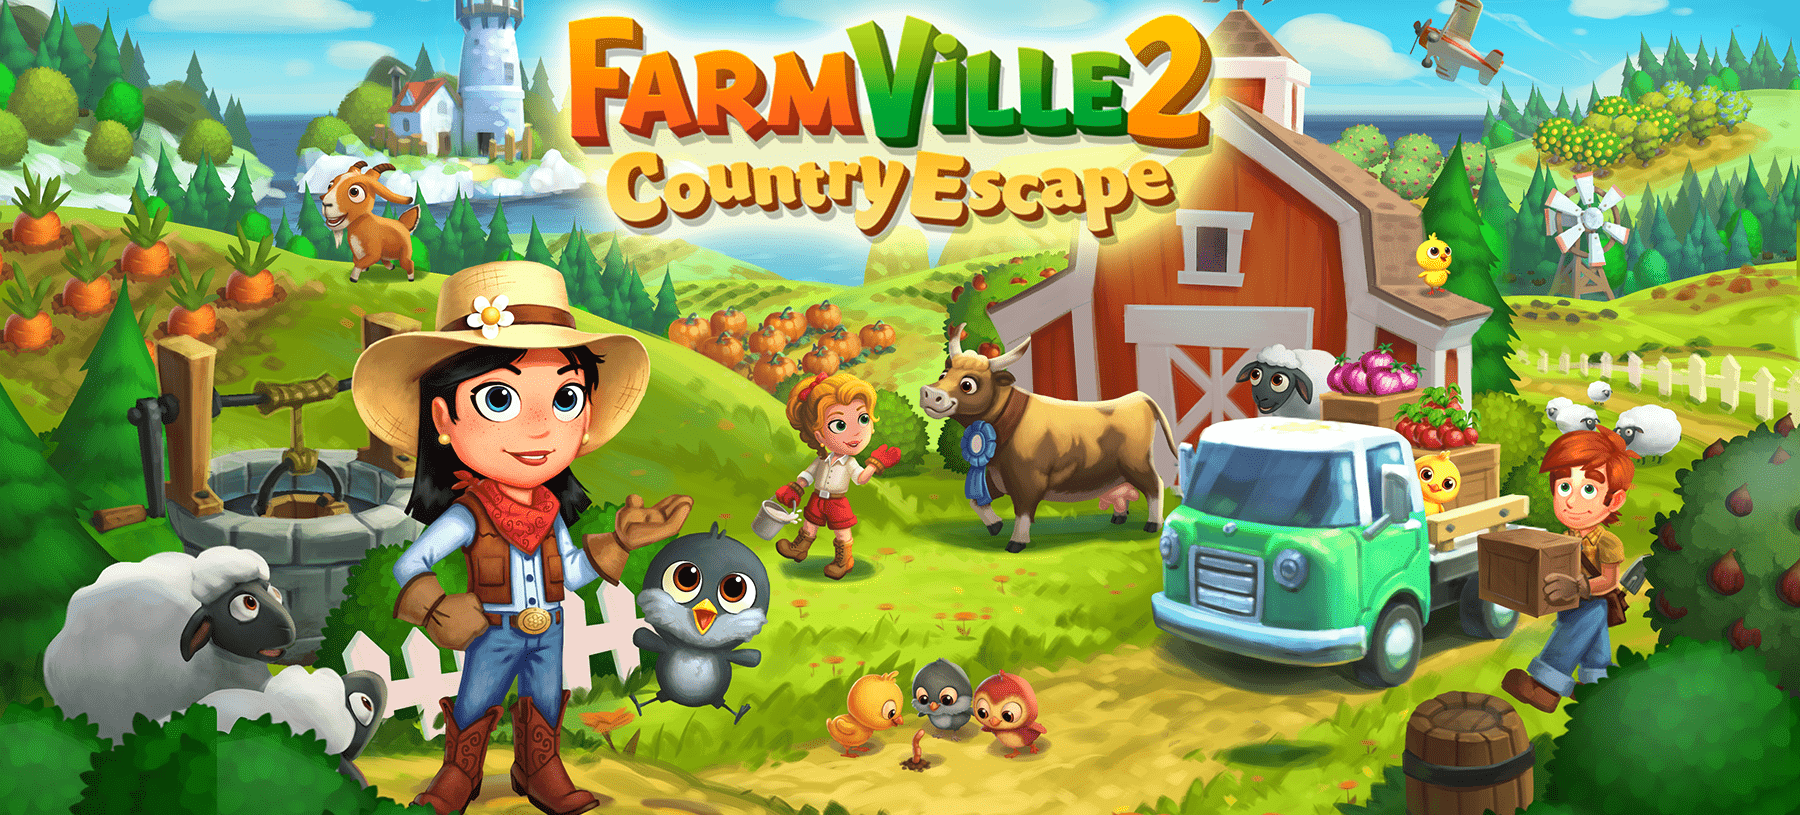 ดาวน์โหลด FarmVille 2: Country Escape (MOD, Unlimited Money, Keys) ฟรีบน Android